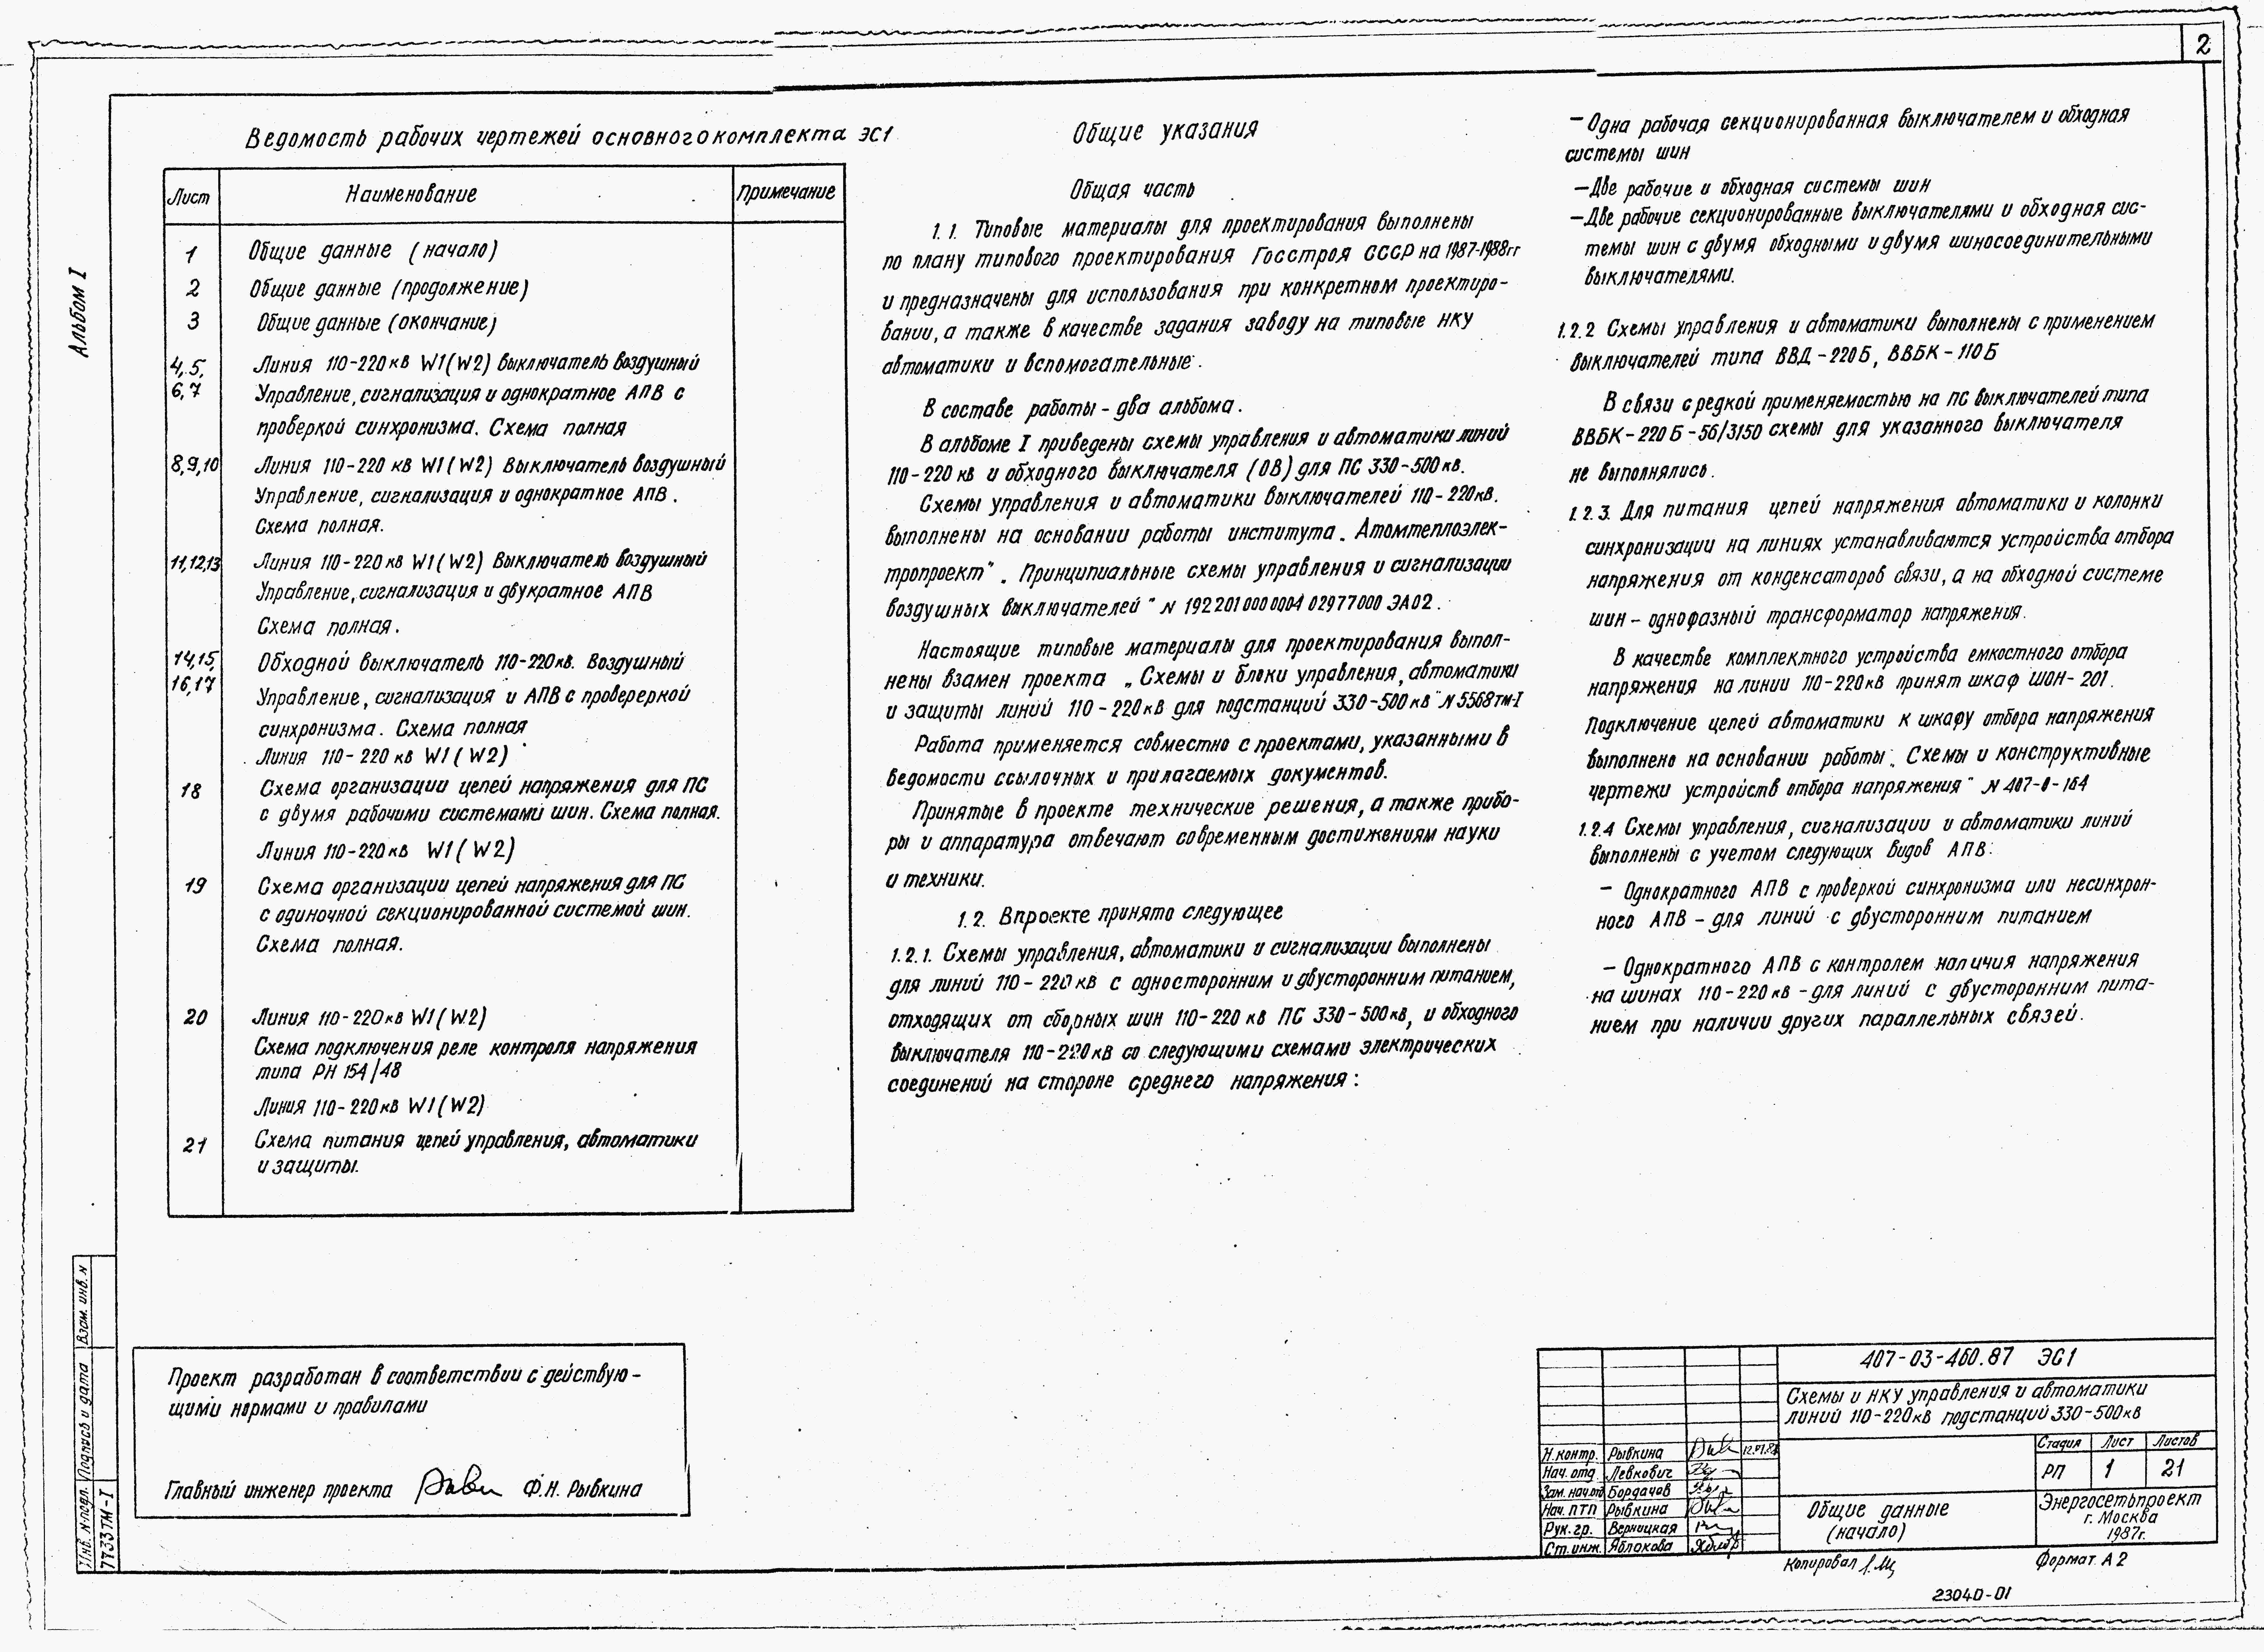 Альбом 1 Схема управления, автоматики и сигнализации линий 110-220 кВ и обходного выключателя